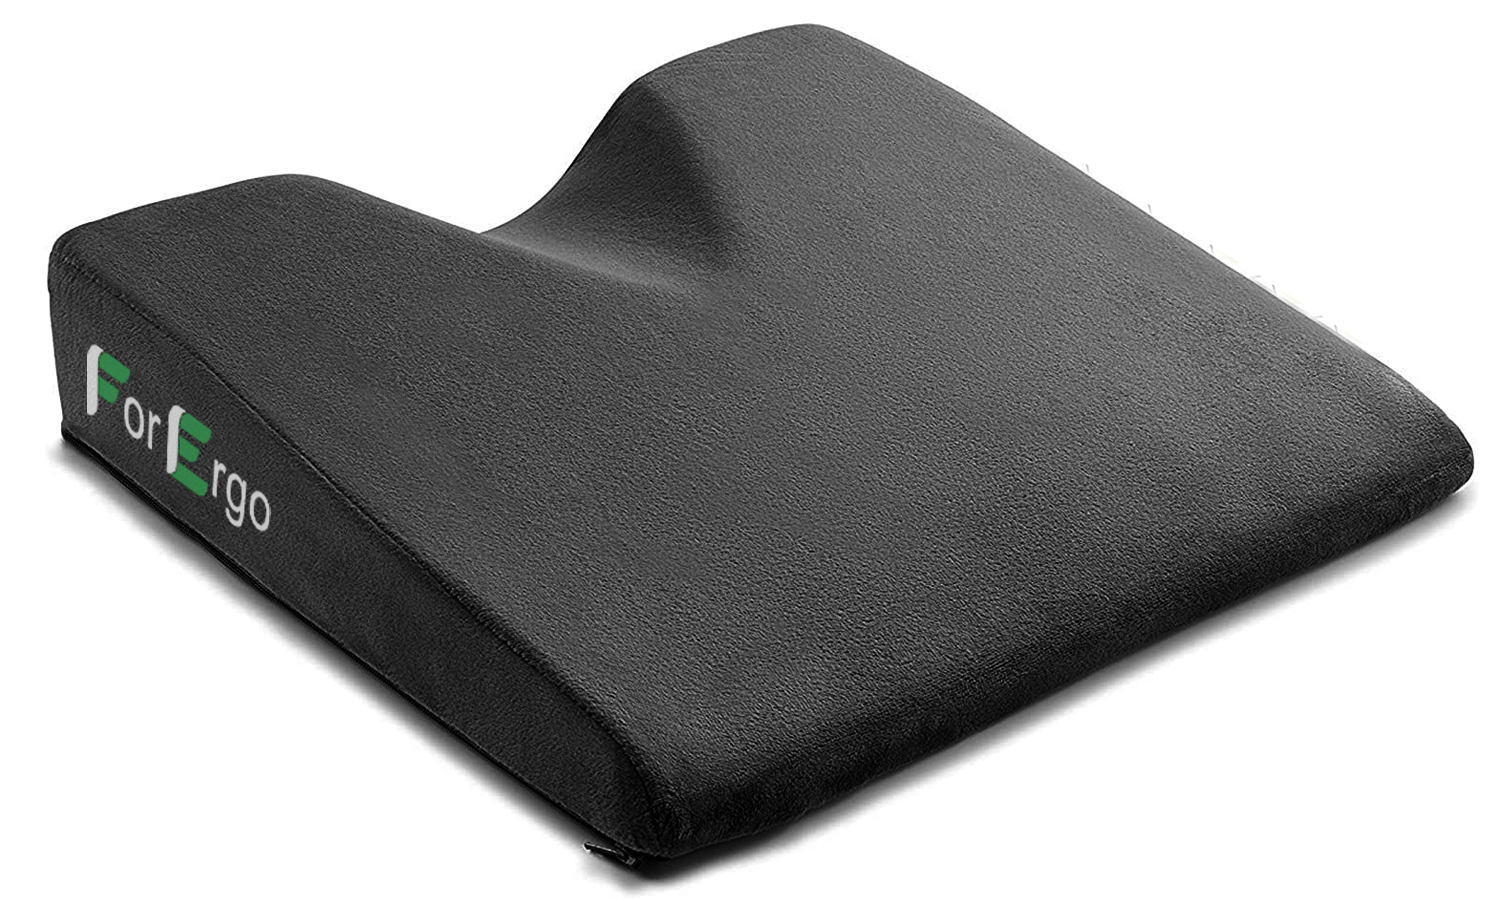 Подушка для сидения на кровати со спинкой